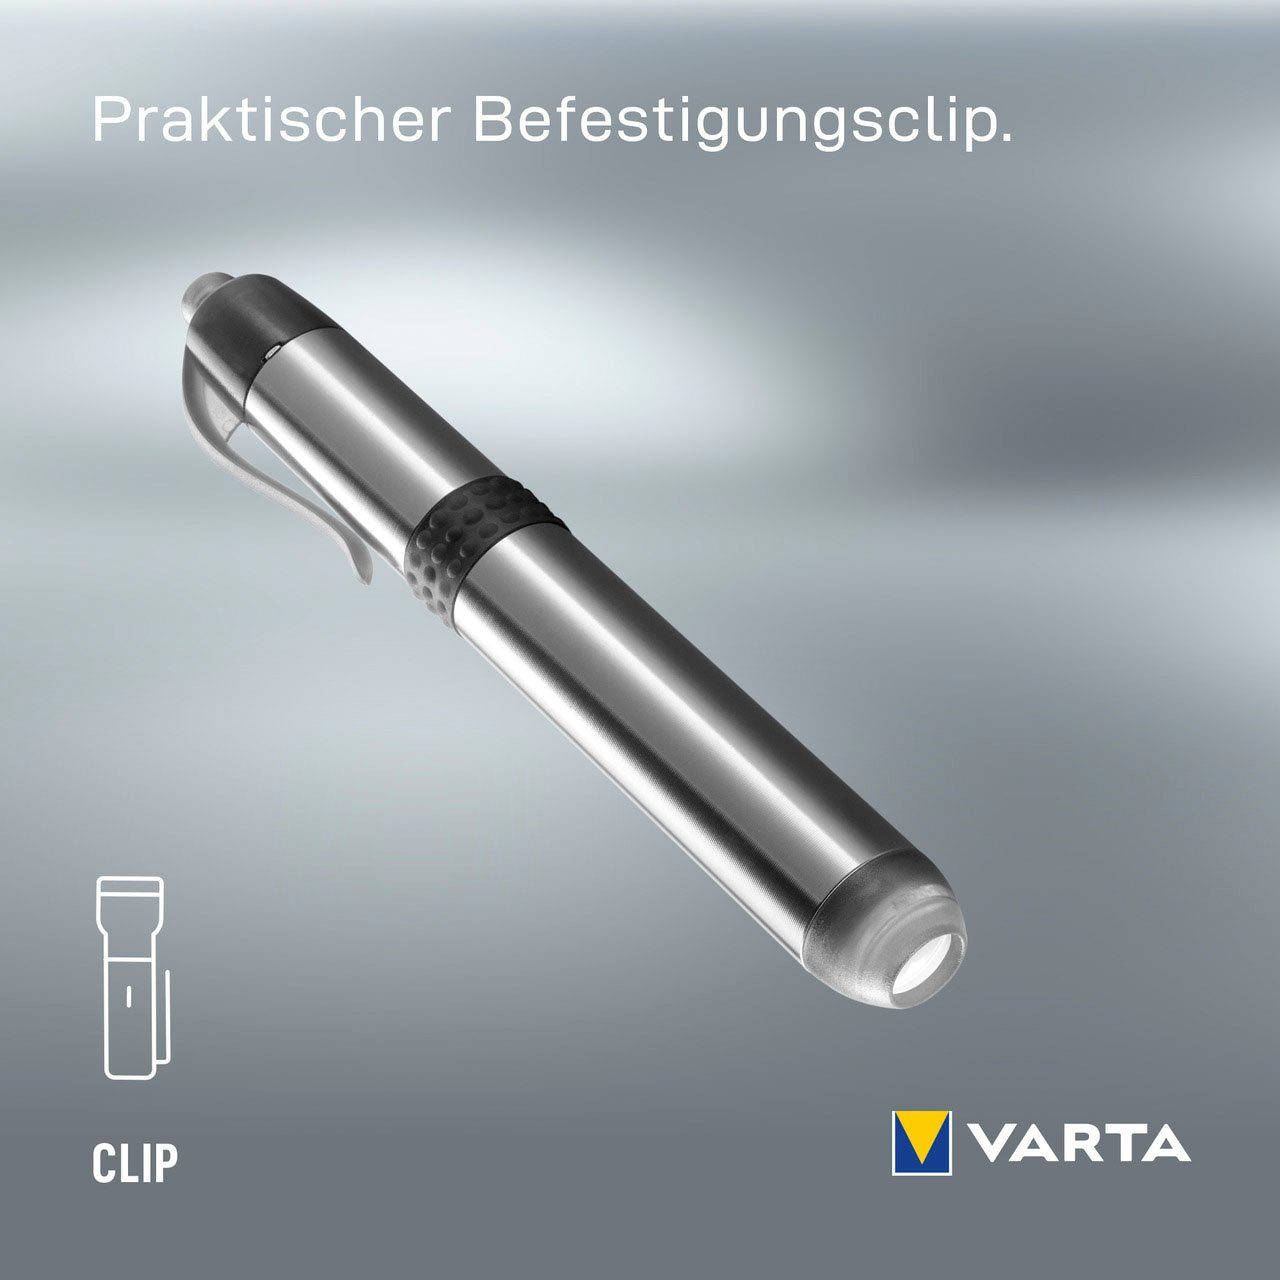 Light Pen with Taschenlampe VARTA Batt. 1AAA